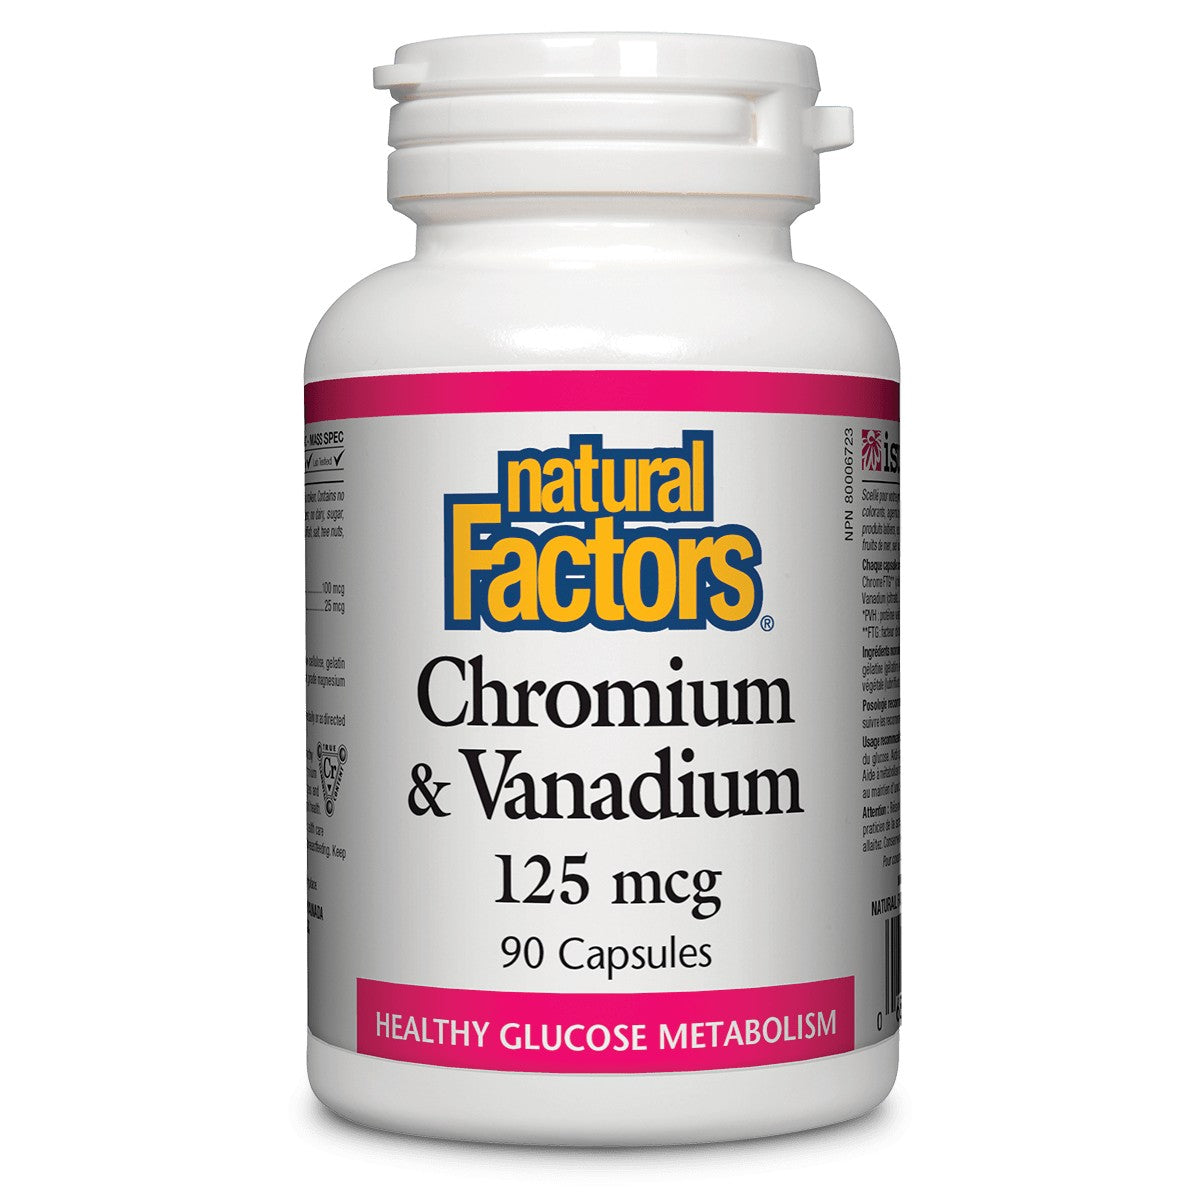 Natural Factors Chromium & Vanadium 125 Mcg, 90 Capsules